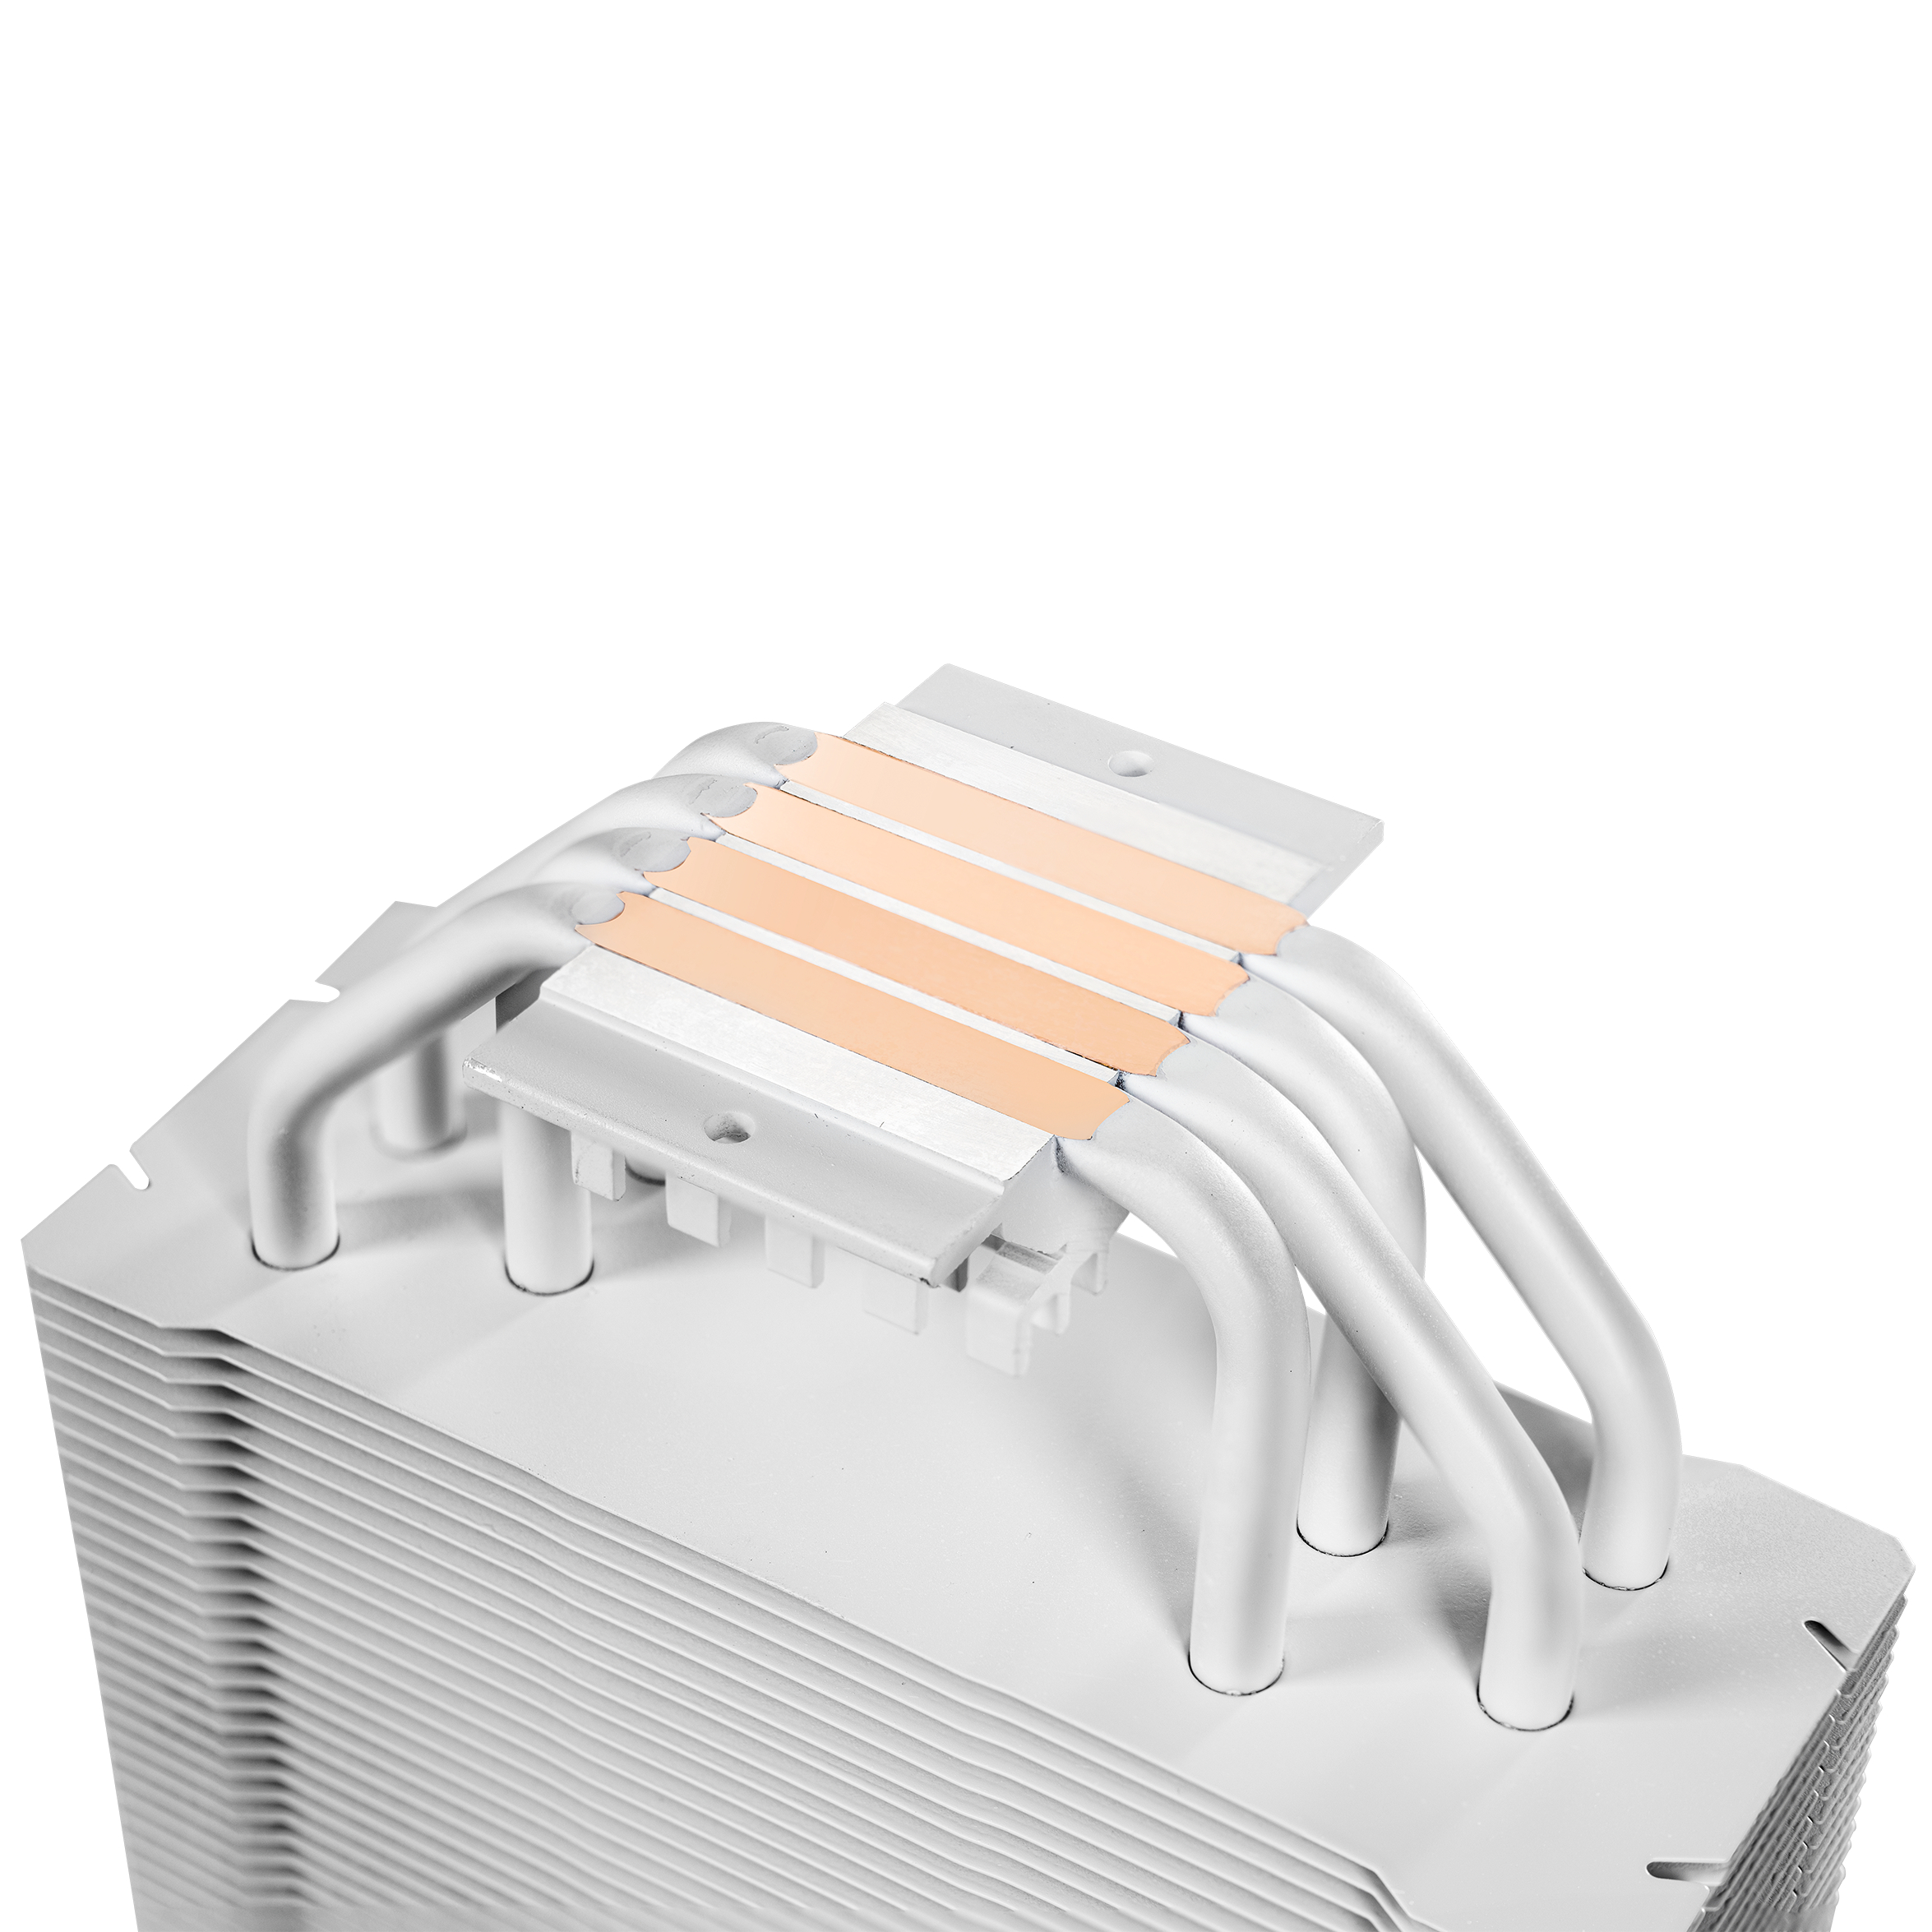 Kolink - Kolink Umbra EX180 White Edition CPU Cooler - 120mm